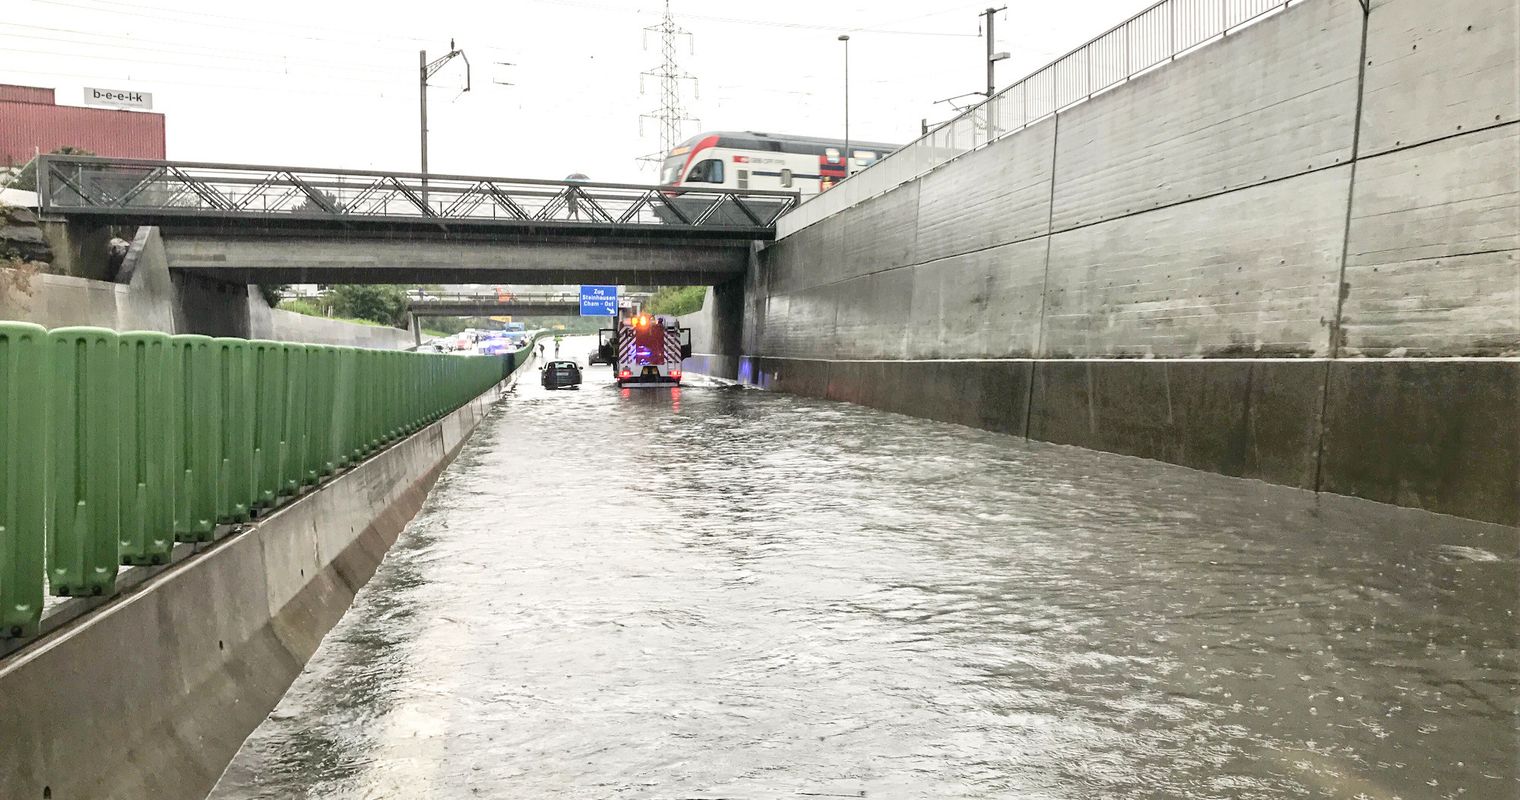 Hochwasser auf der Autobahn? Für Behörden offenbar kein Problem